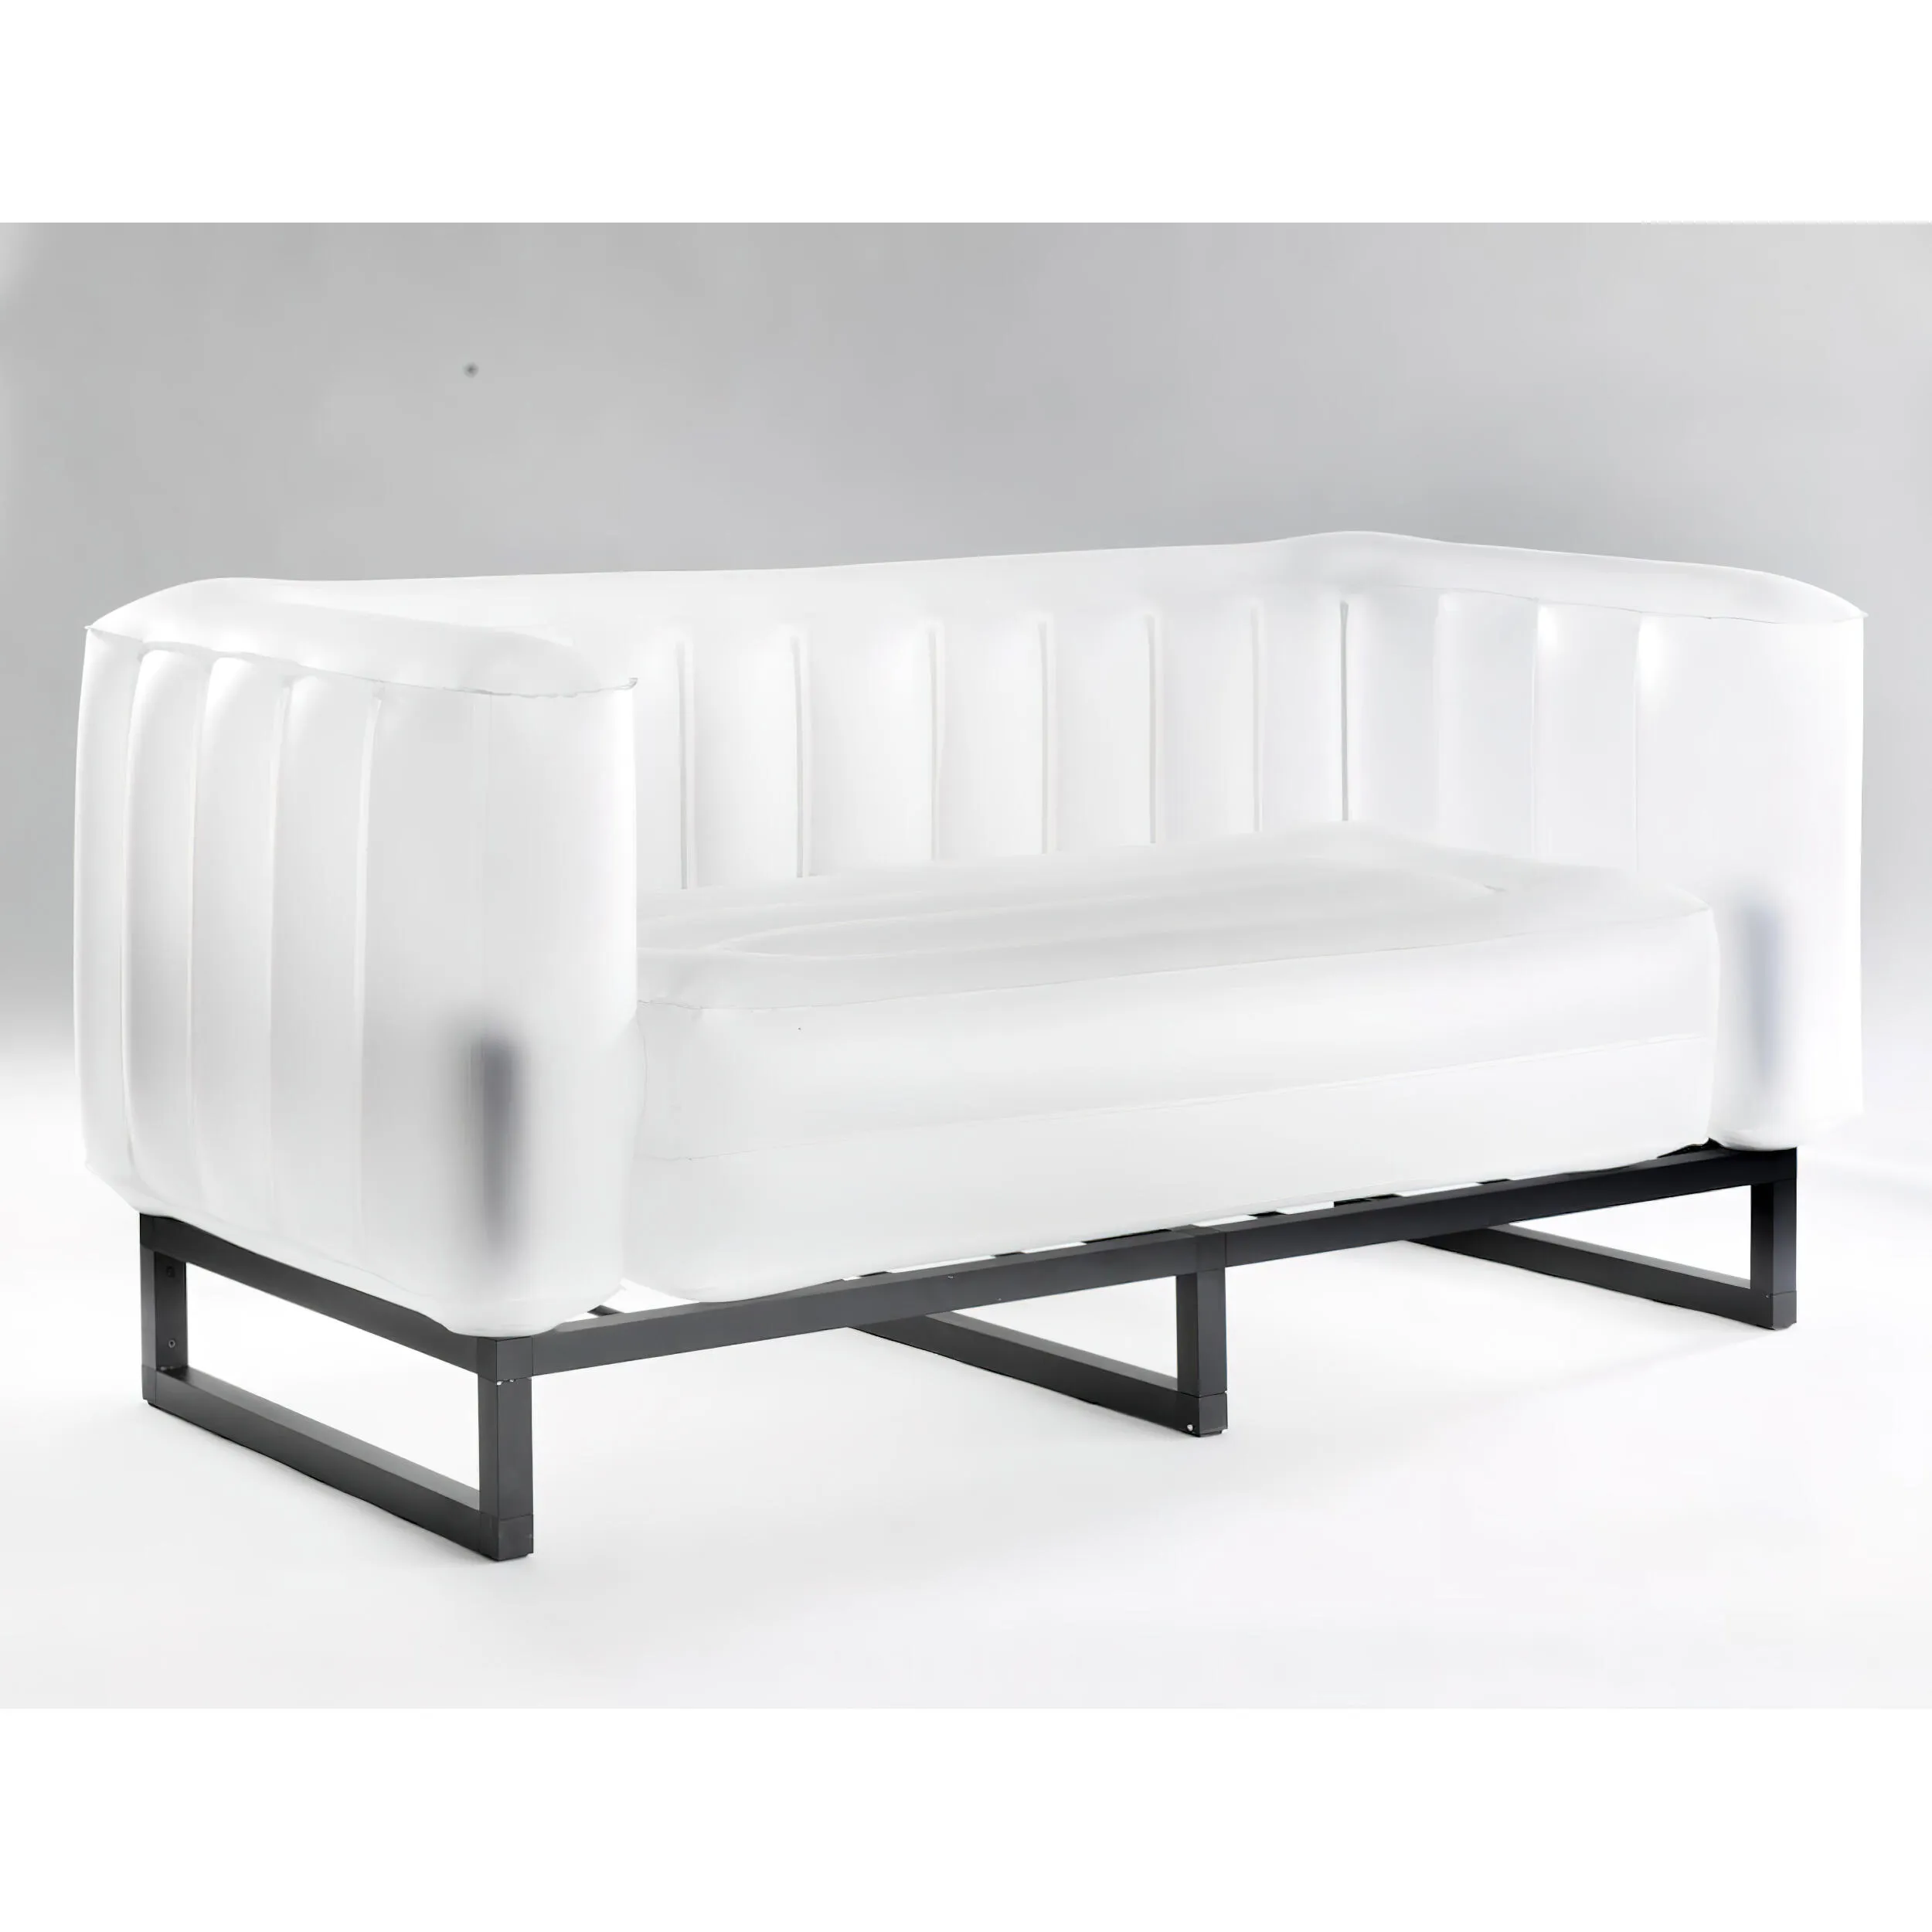 divano Yomi eko illuminato struttura in legno nero, dimensioni 76x151xH69 cm peso 14,8 kg, seduta gonfiabile in TPU colore bianco traslucido